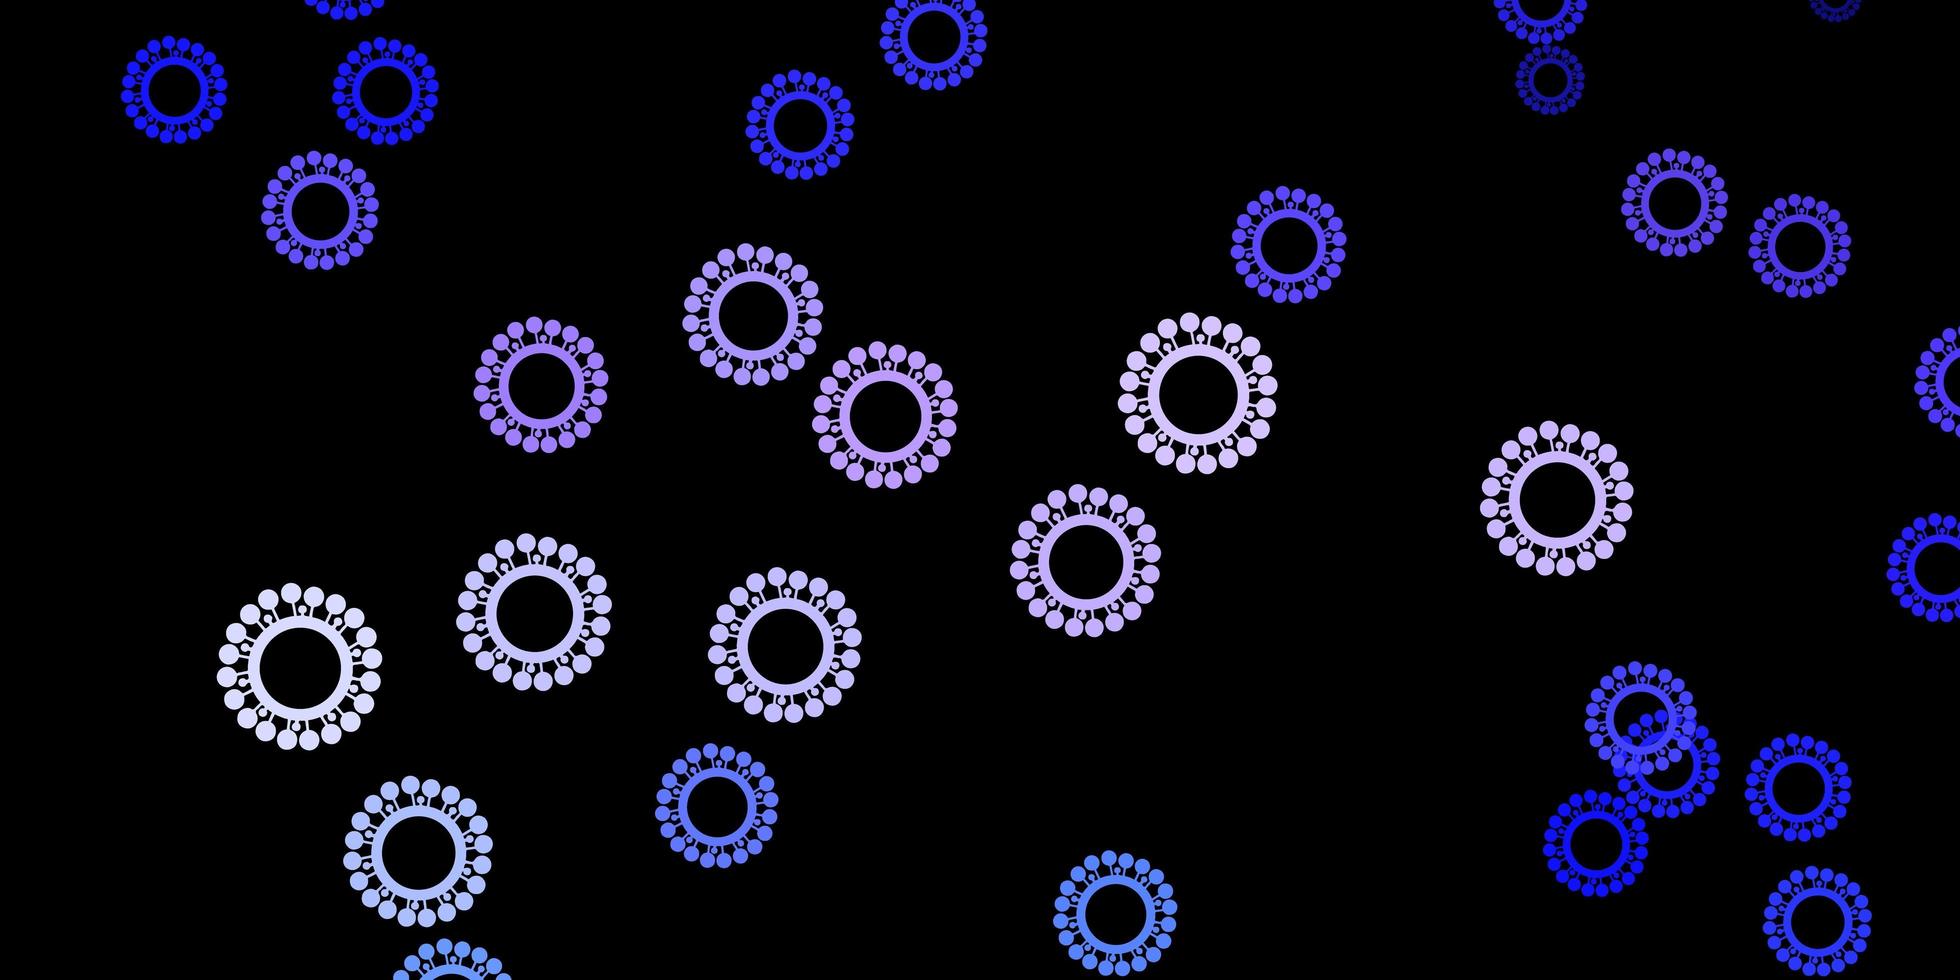 Dark purple vector backdrop with virus symbols.